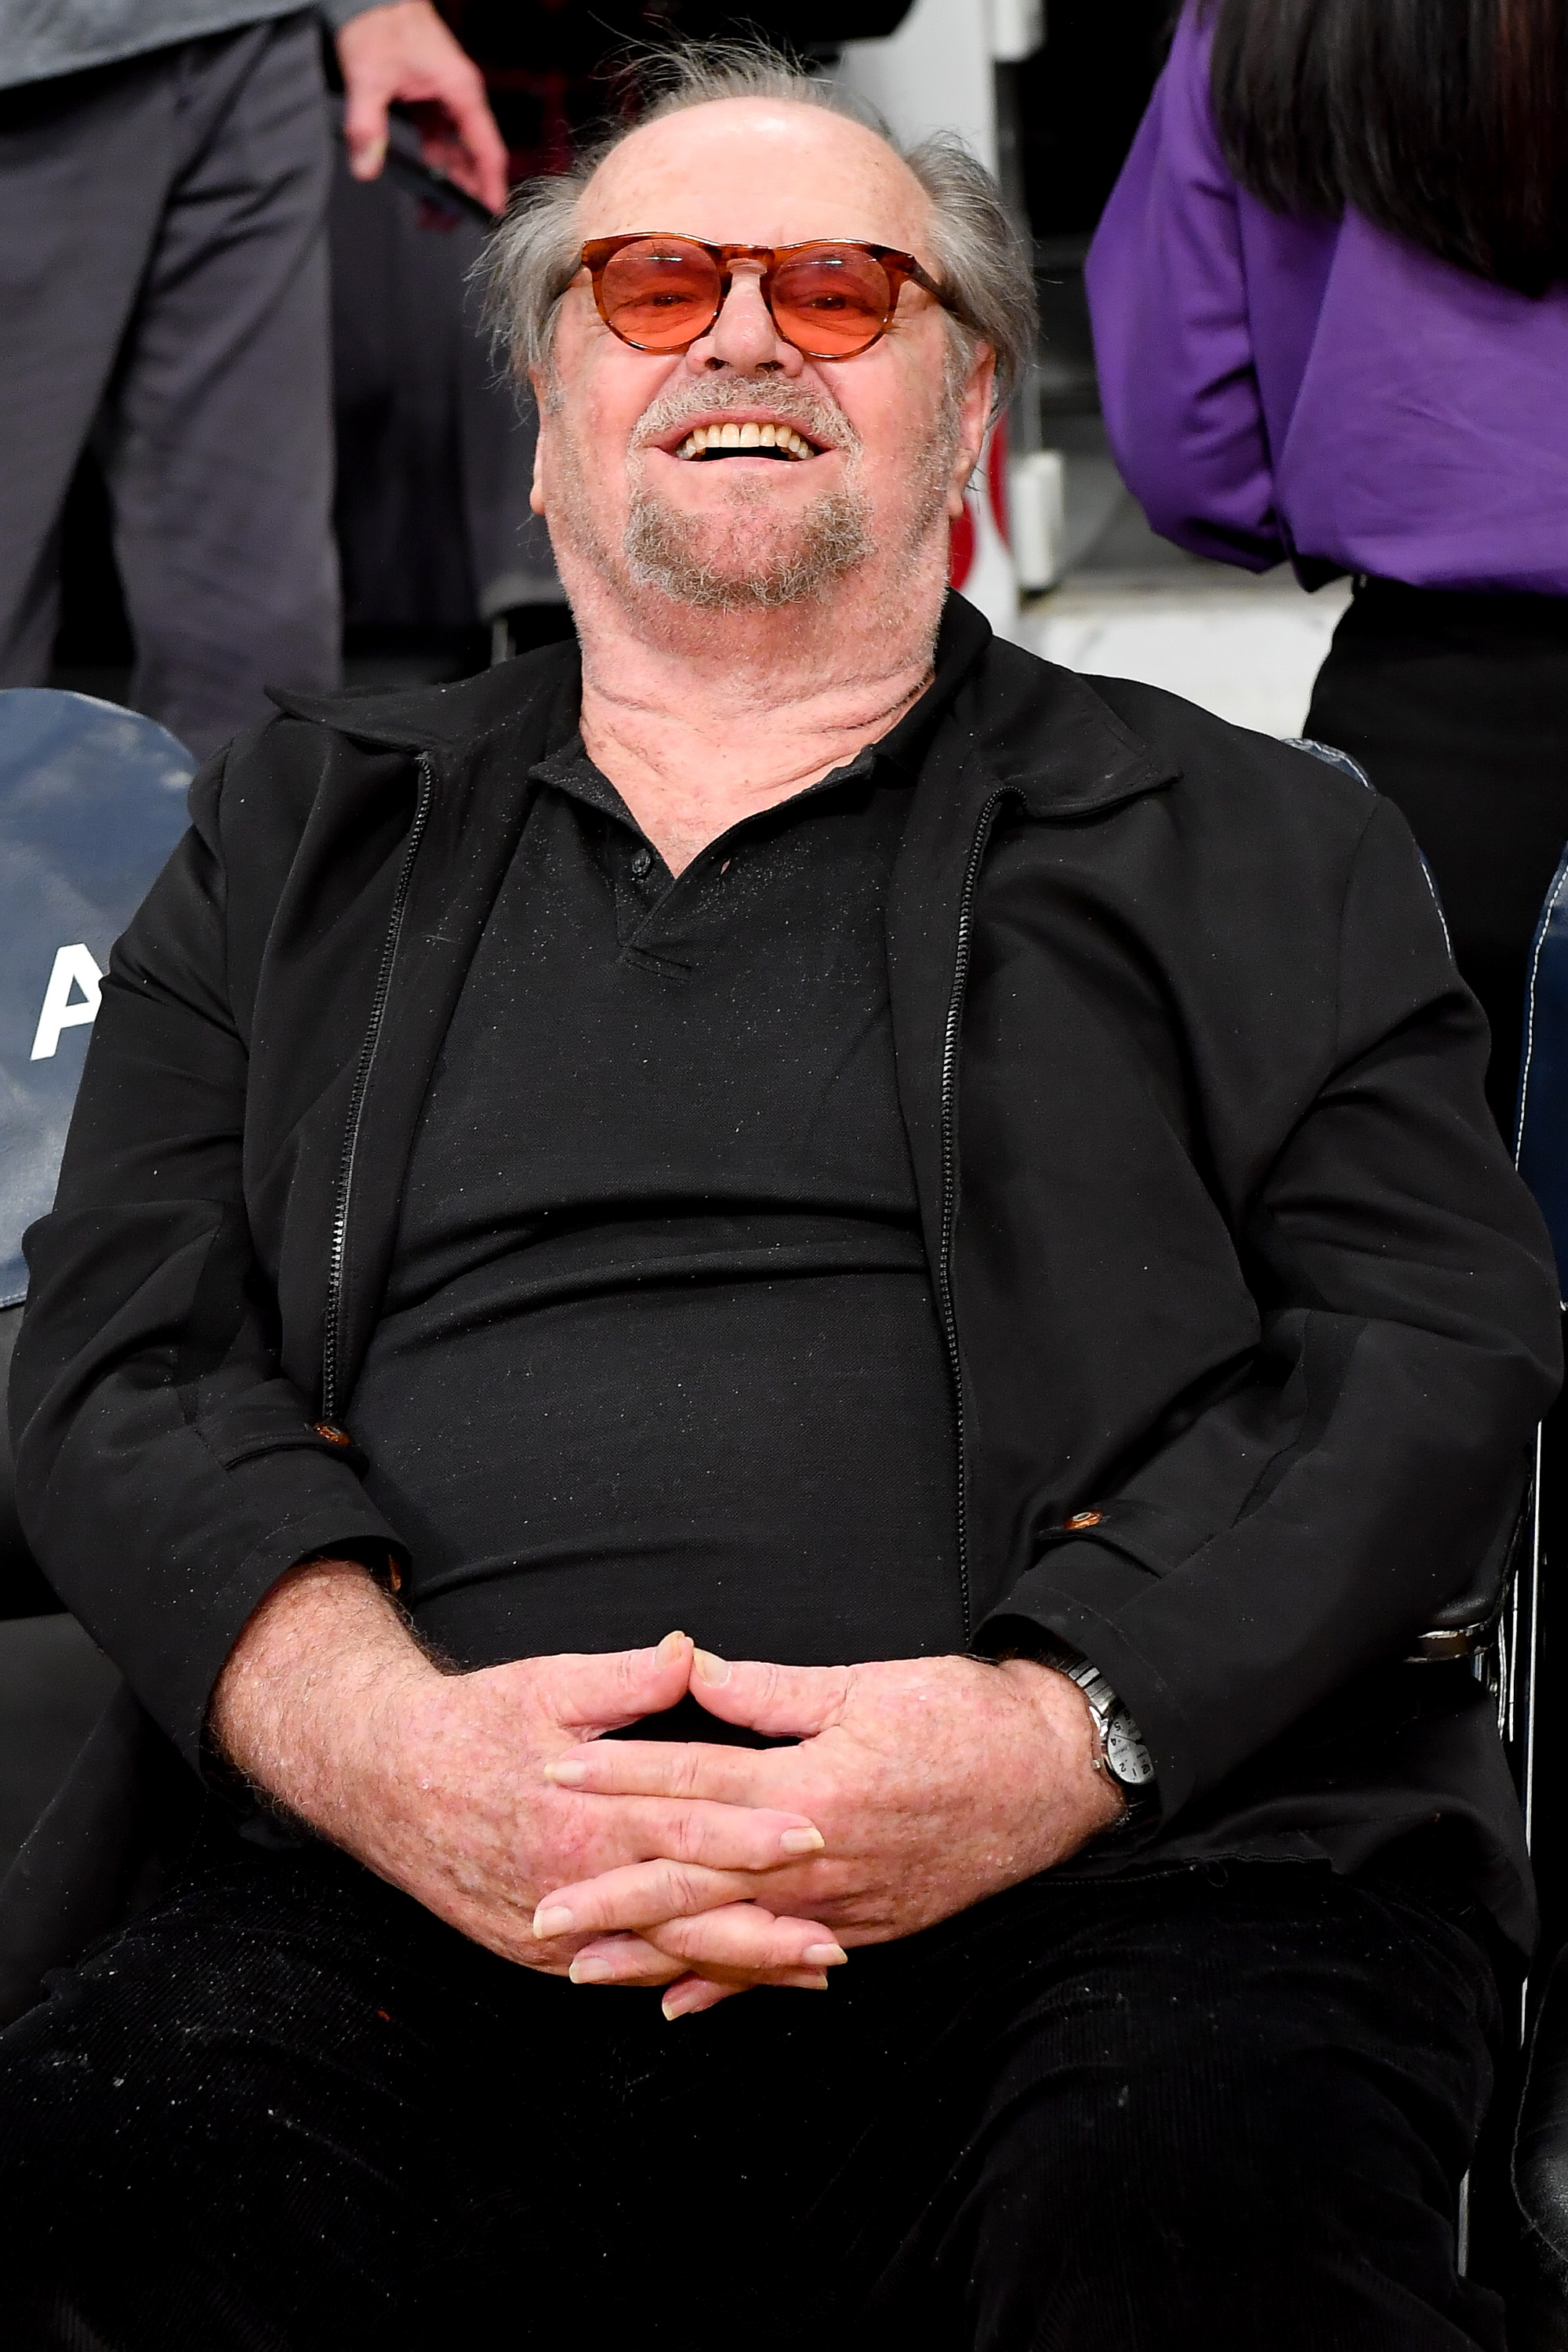 Jack Nicholson lors d'un match de basket-ball le 7 janvier 2020 à Los Angeles, Californie | Source : Getty Images